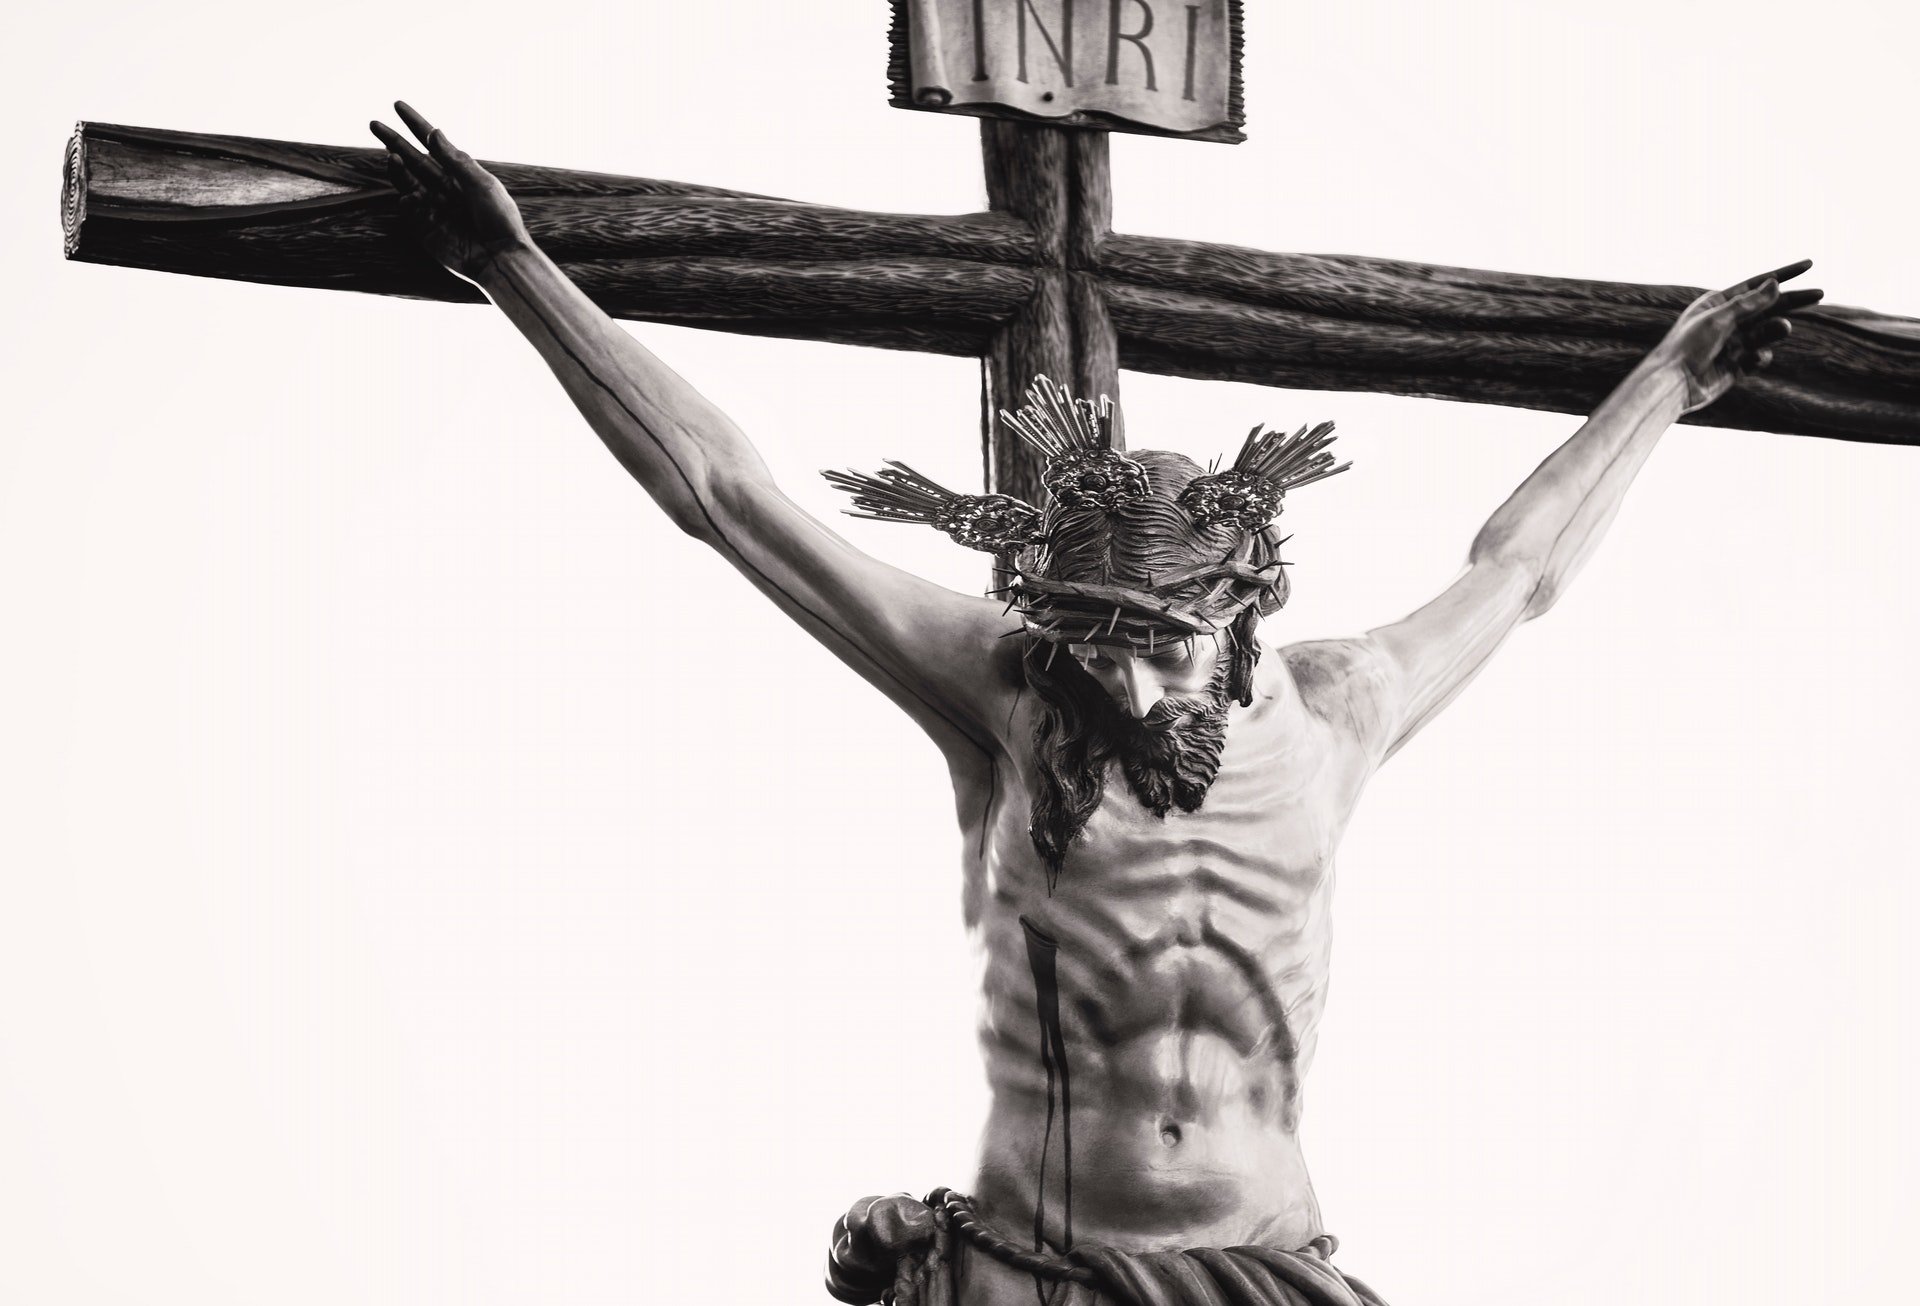 Uma arte plástica de um crucifixo com Jesus Cristo. No topo da cruz, uma placa escrita com 'inri'